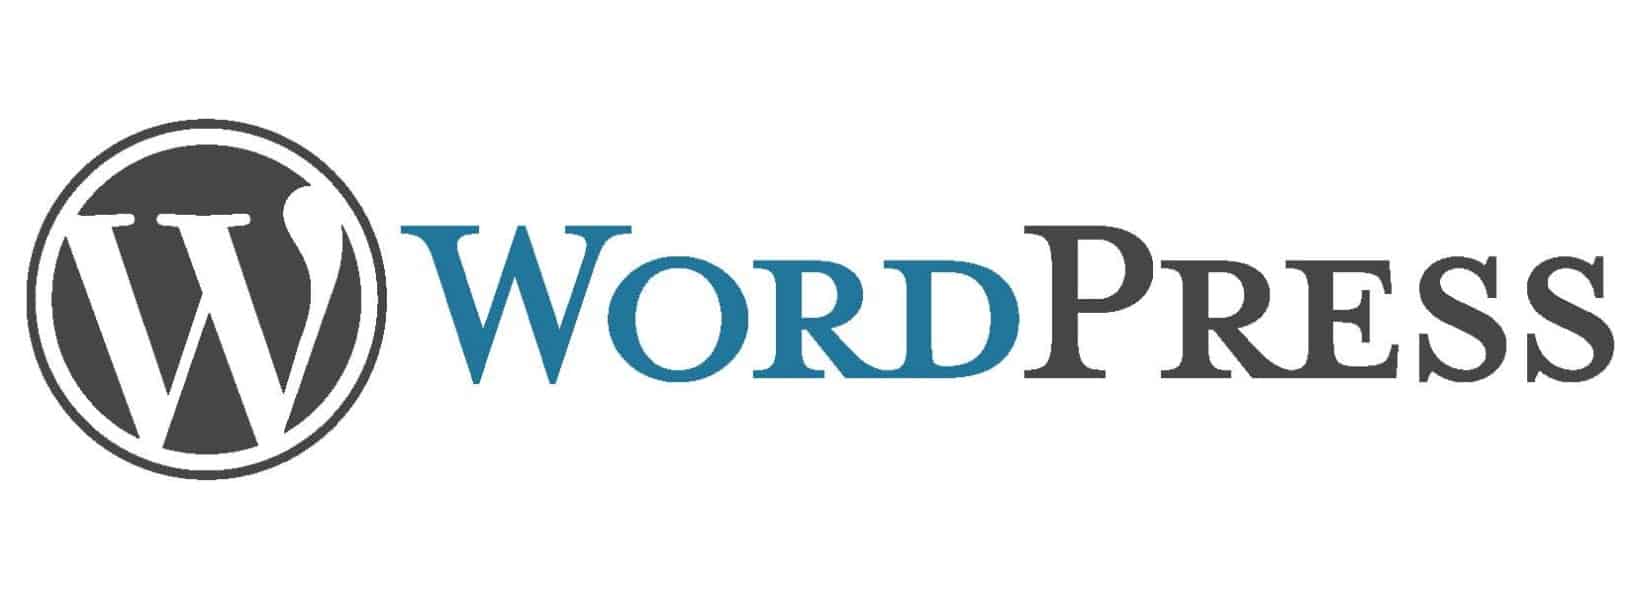 Gdzie szukać informacji na temat WordPressa? – Cz. 1. Źródła zagraniczne